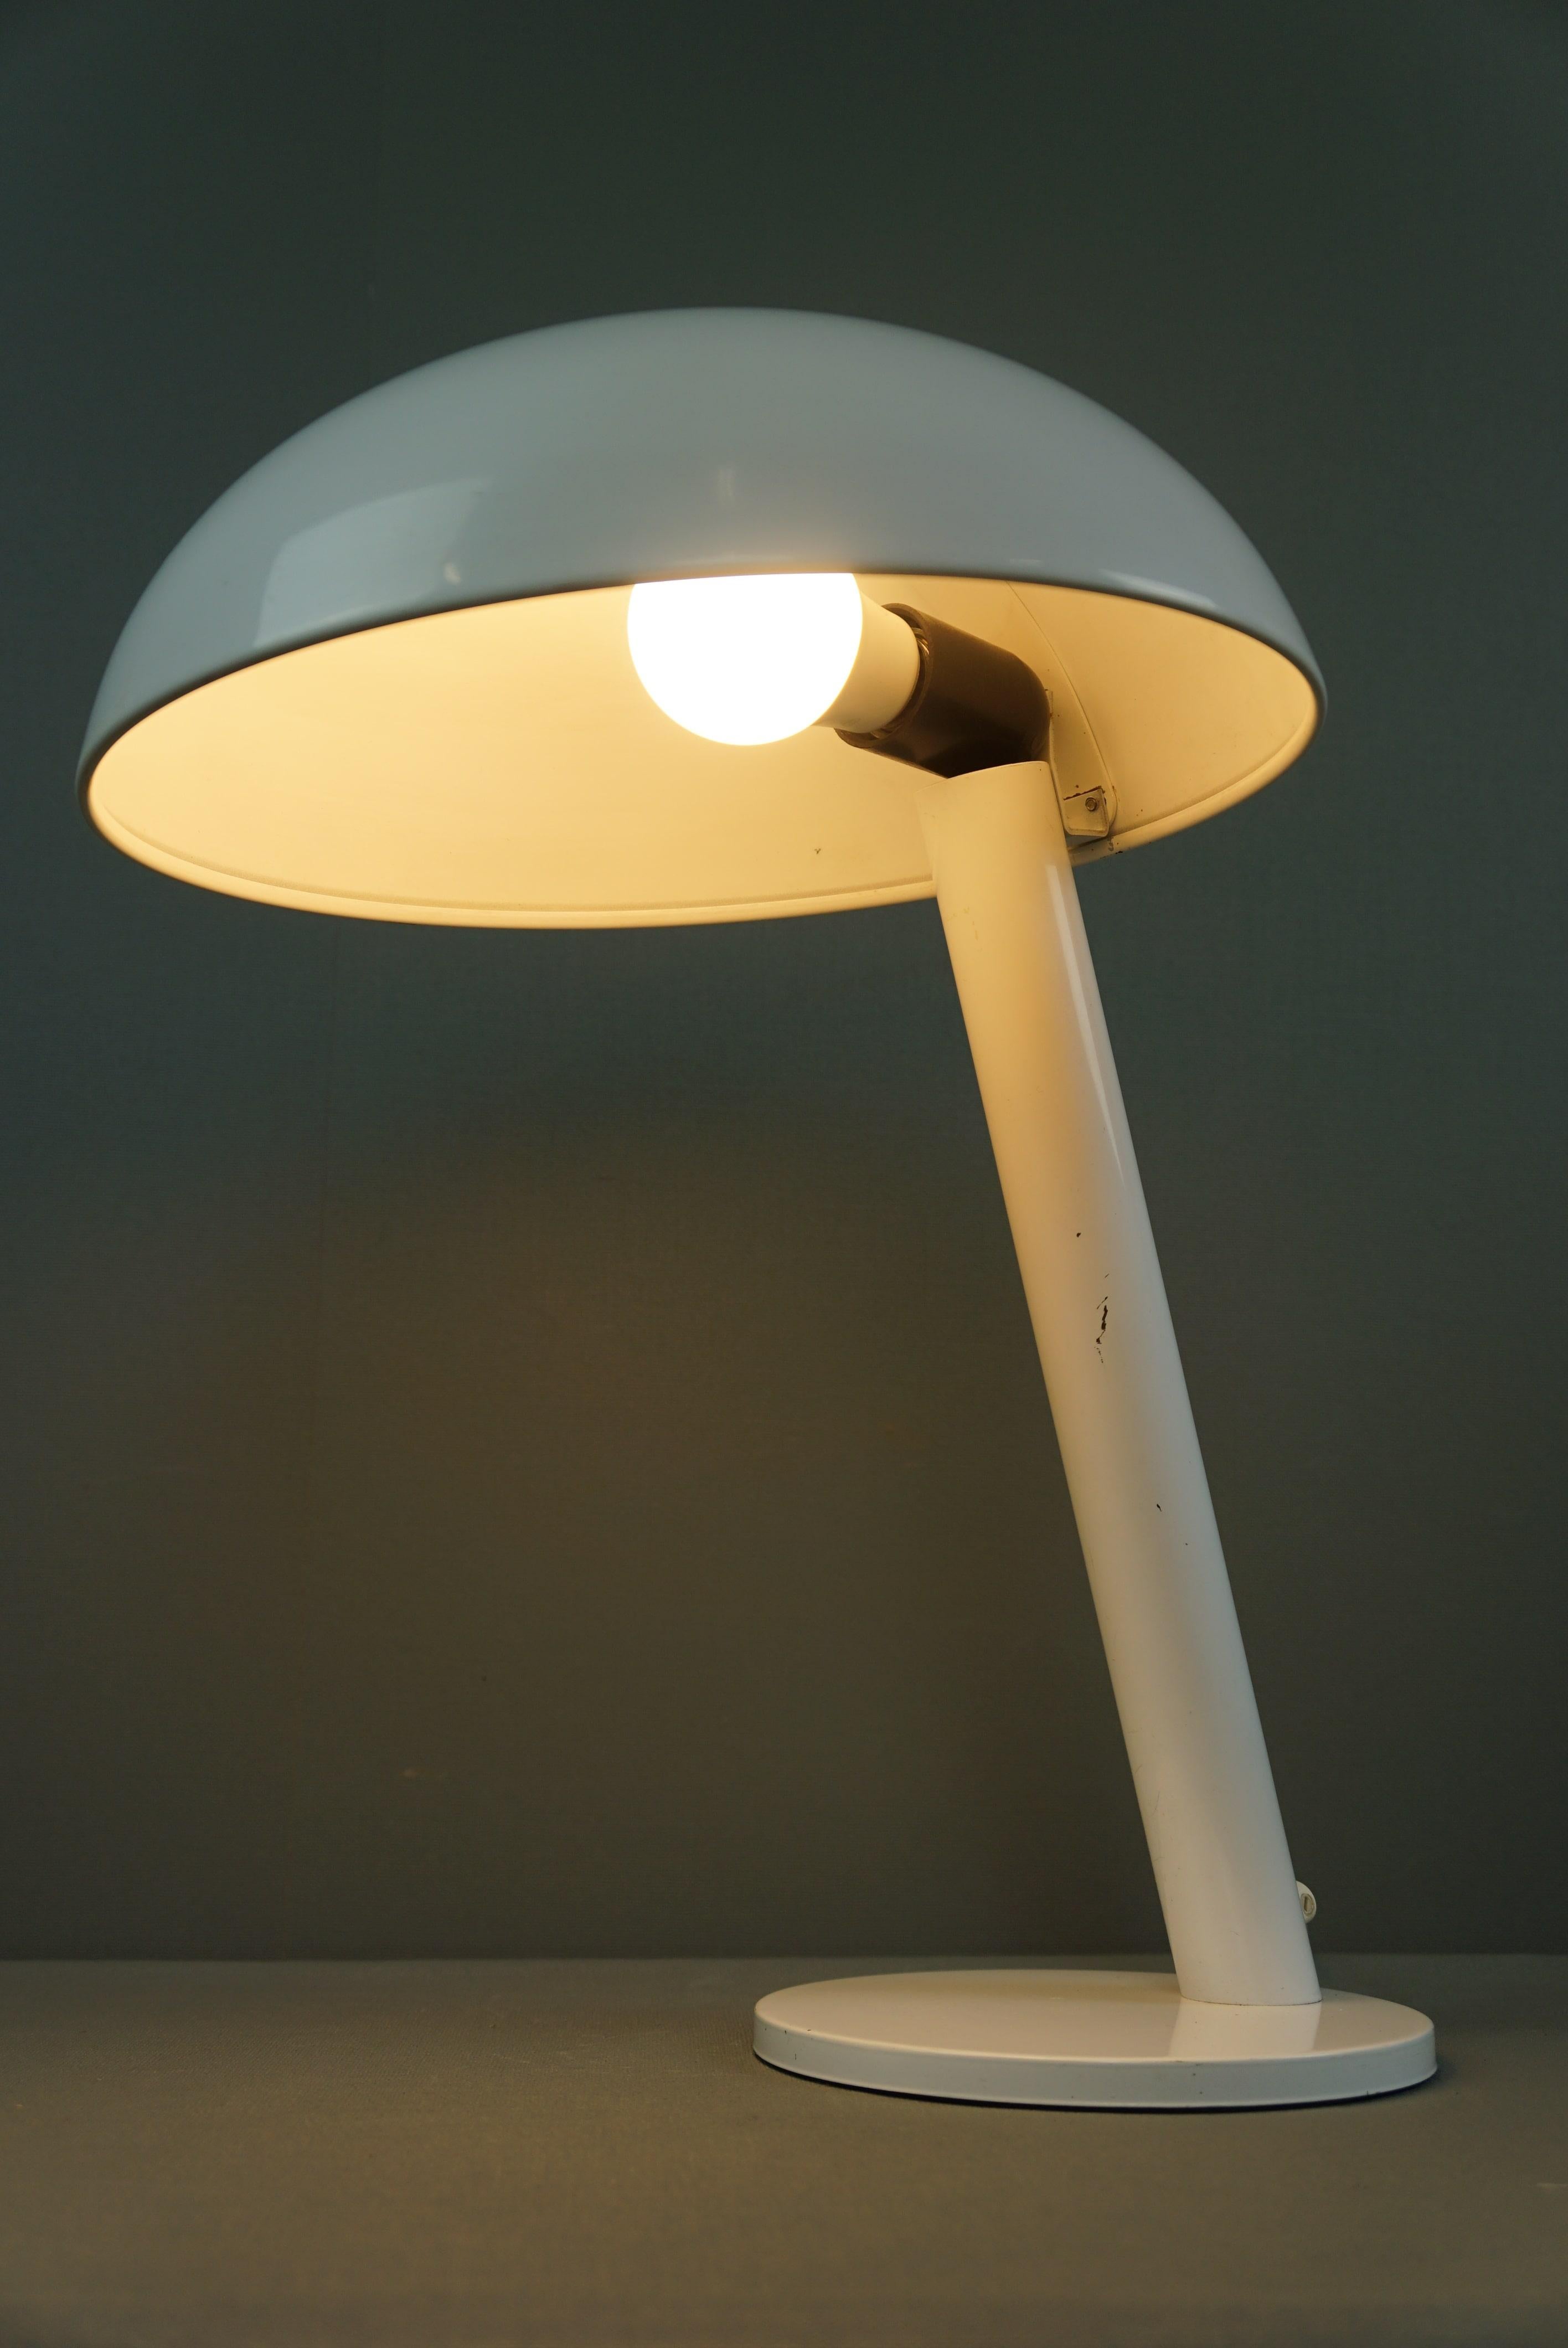 Nous vous proposons cette lampe vintage de la société néerlandaise Hala Zeist datant des années 1960.

Ce classique vintage a une allure élégante et contemporaine et est également très moderne grâce à sa couleur blanche et à son design.
Compte tenu